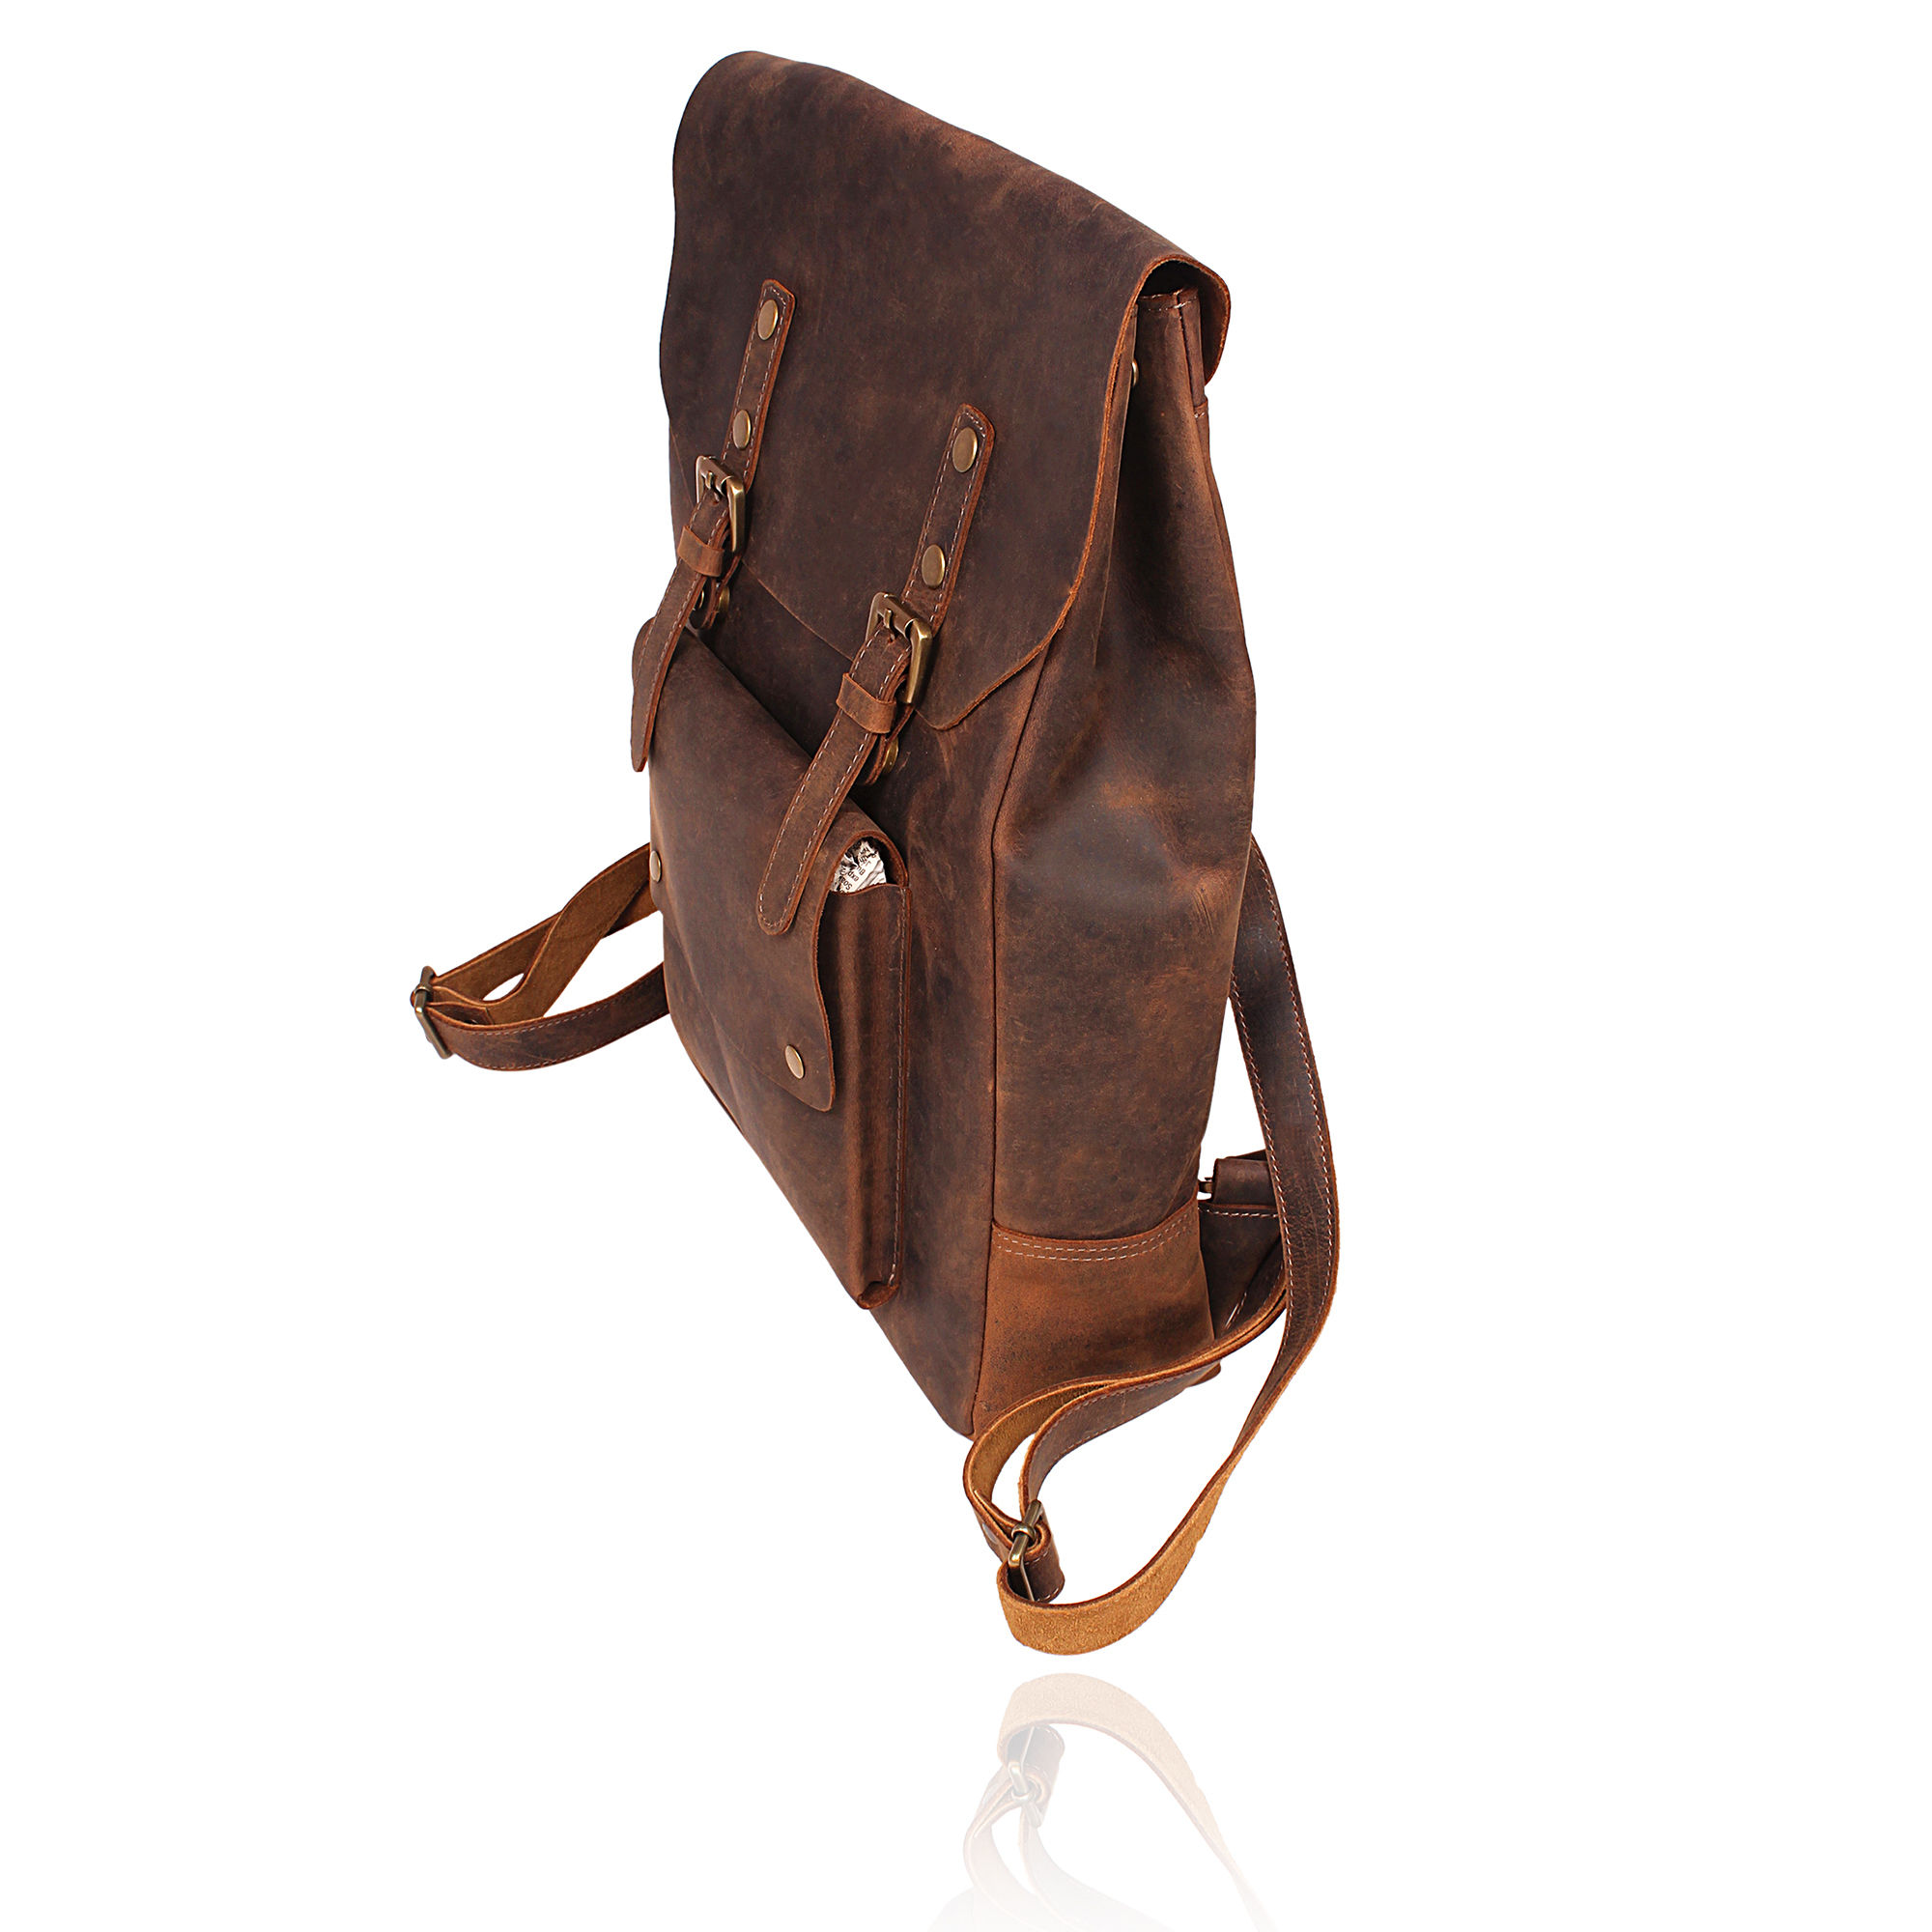 Vintage leather Backpack